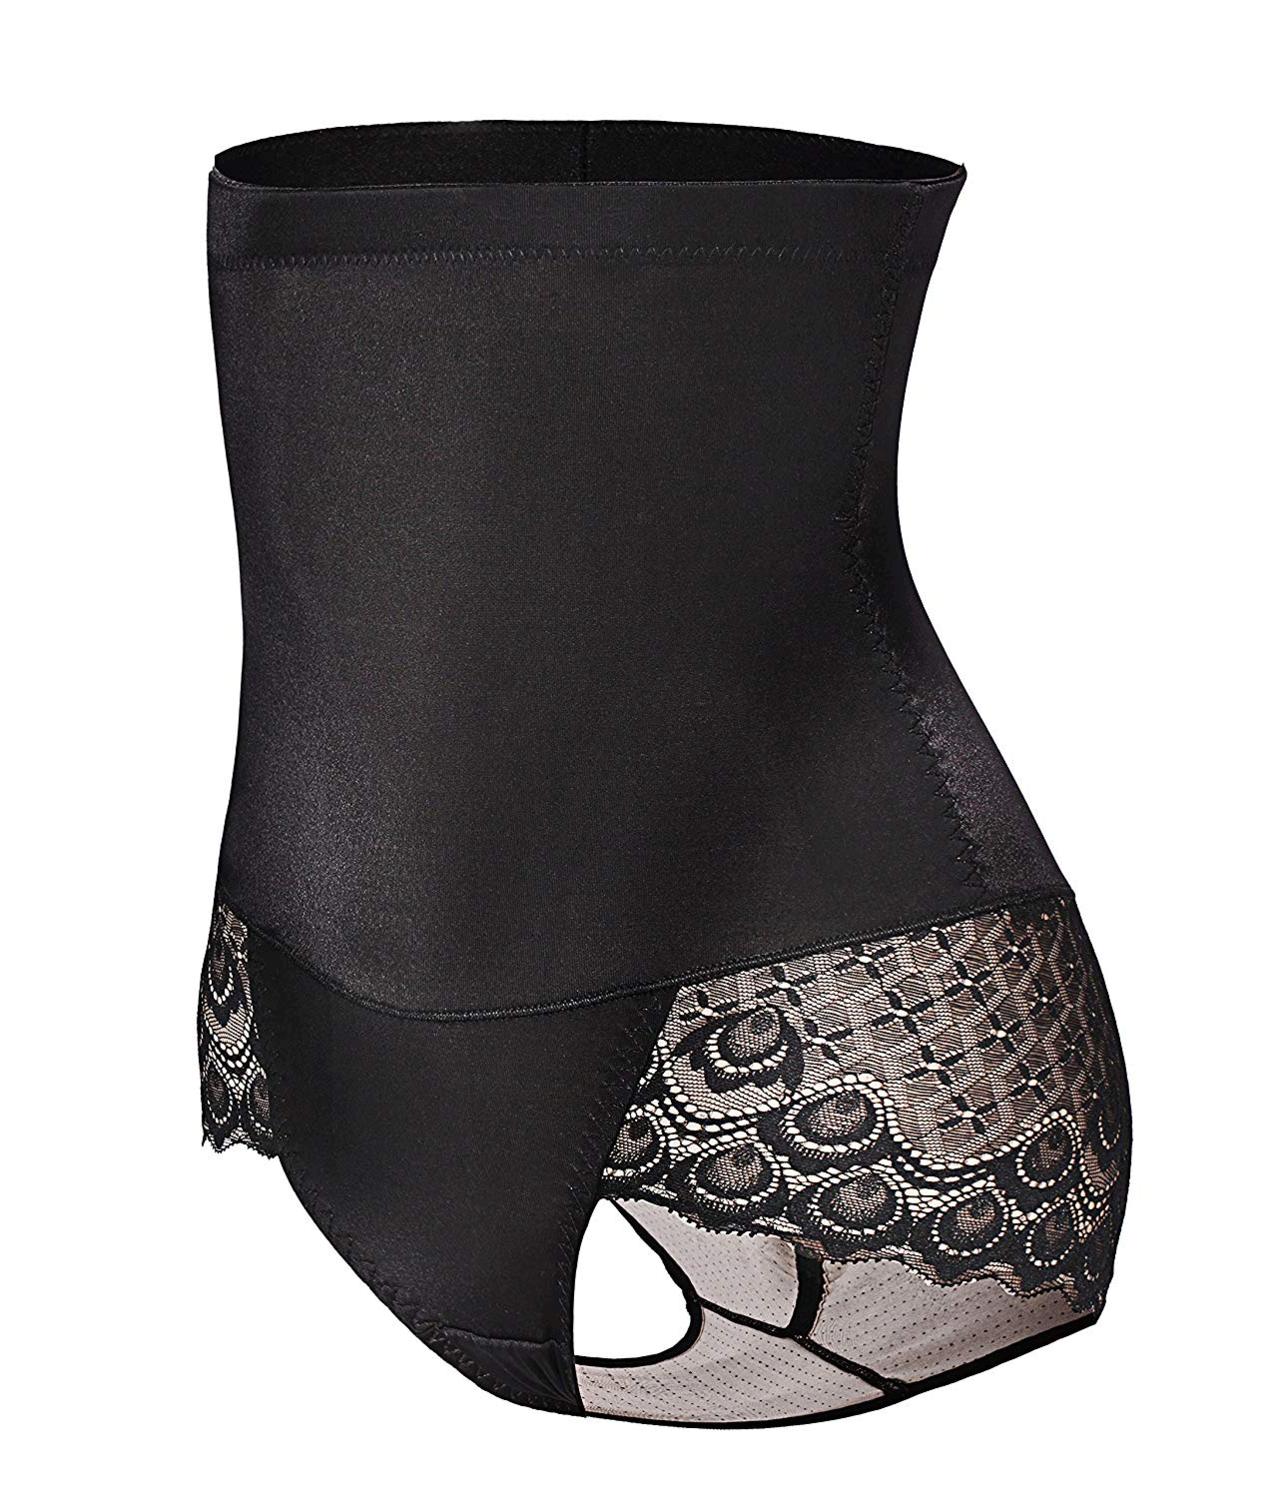 Gotoly Women's Butt Lifter Shaper Seamless, Black(buttock Enhancer ...